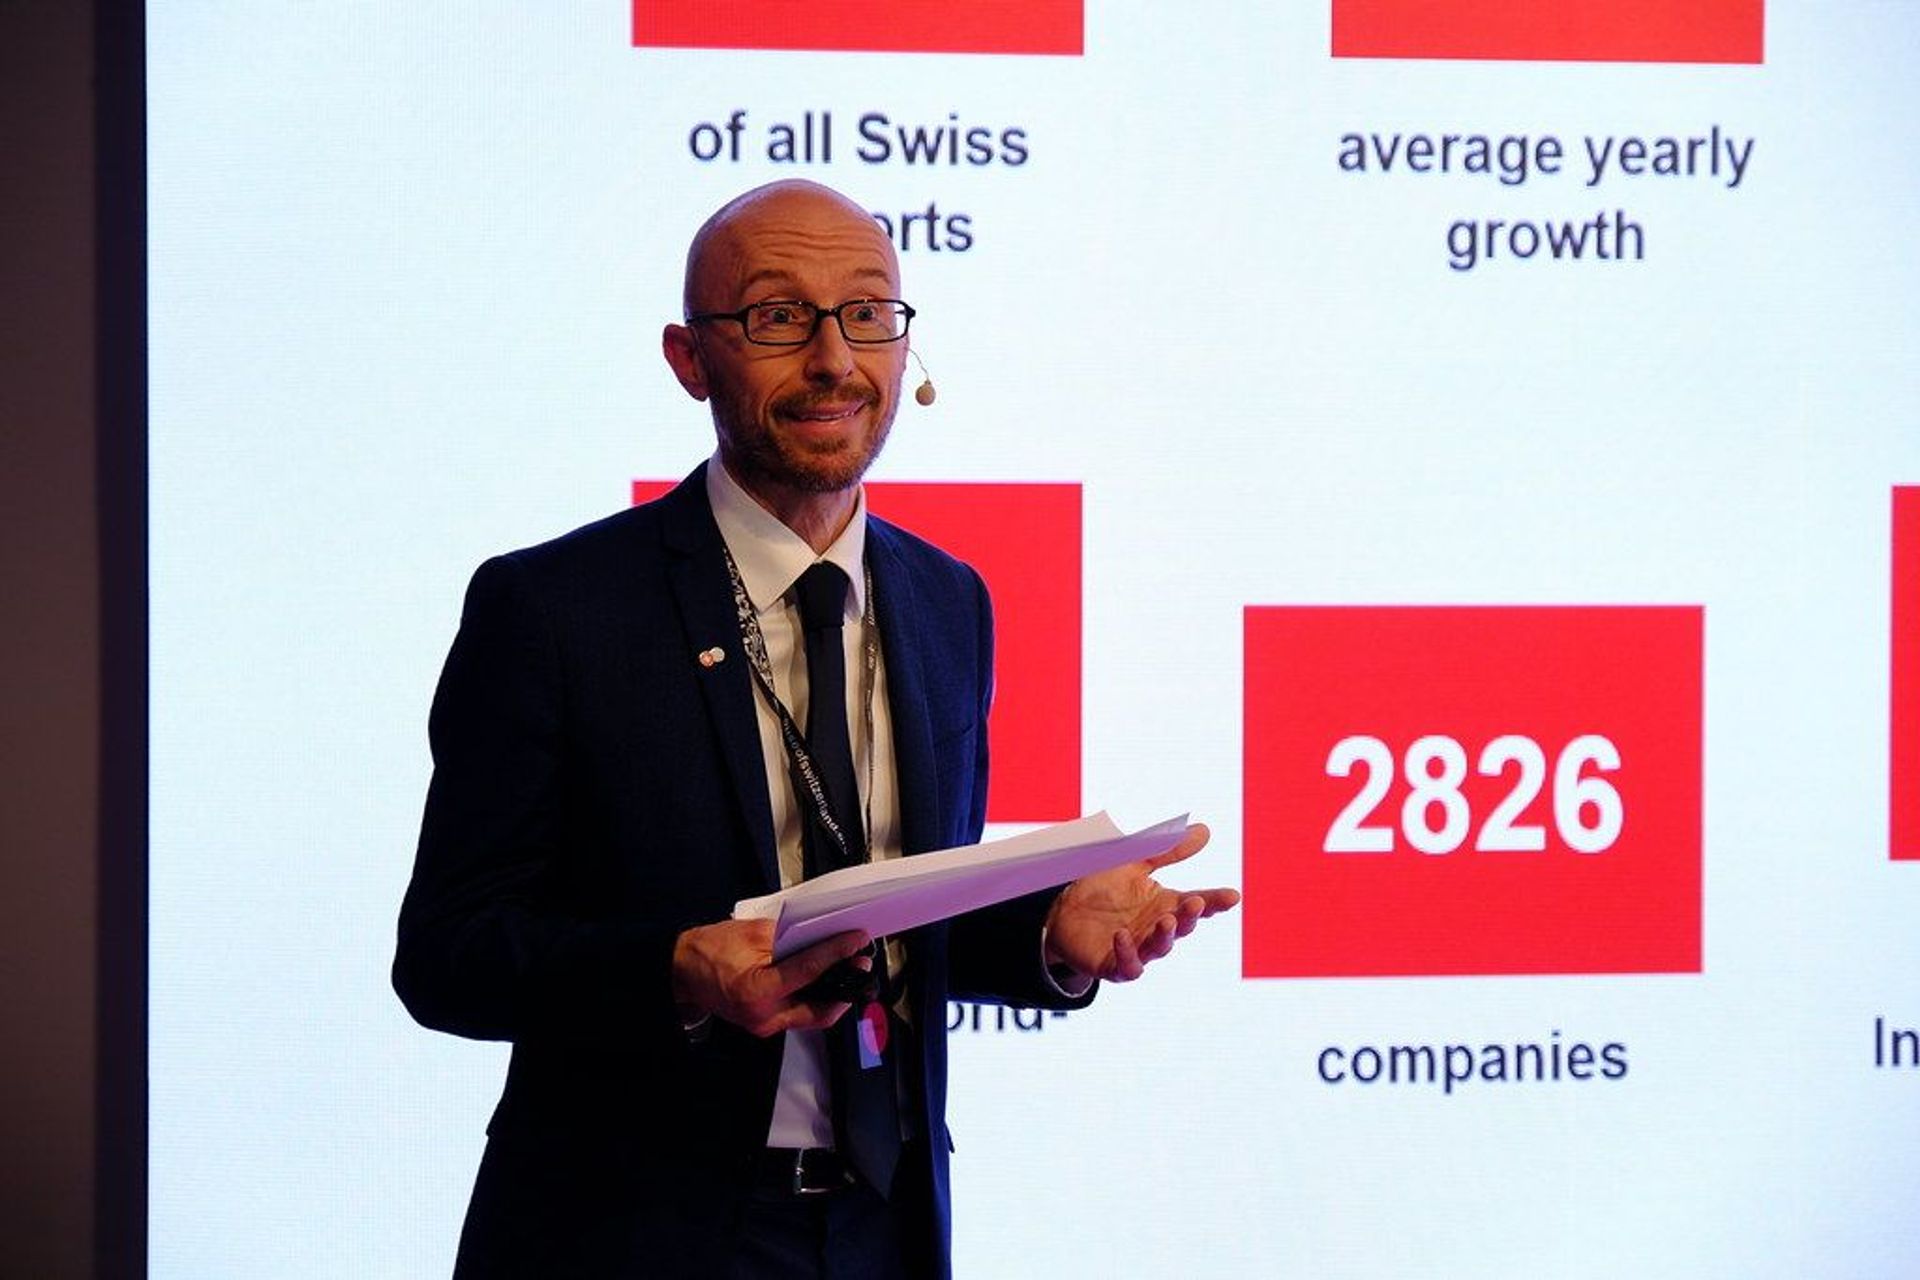 Stefans Cvikijs, Šveices biznesa centra Itālijas vadītājs, uzrunāja ievadu un tēmu "Šveice – jūsu atrašanās vieta personalizētai medicīnai" pasākumā "Personalizētās veselības tendences" Milānā 25. gada 2022. maijā.